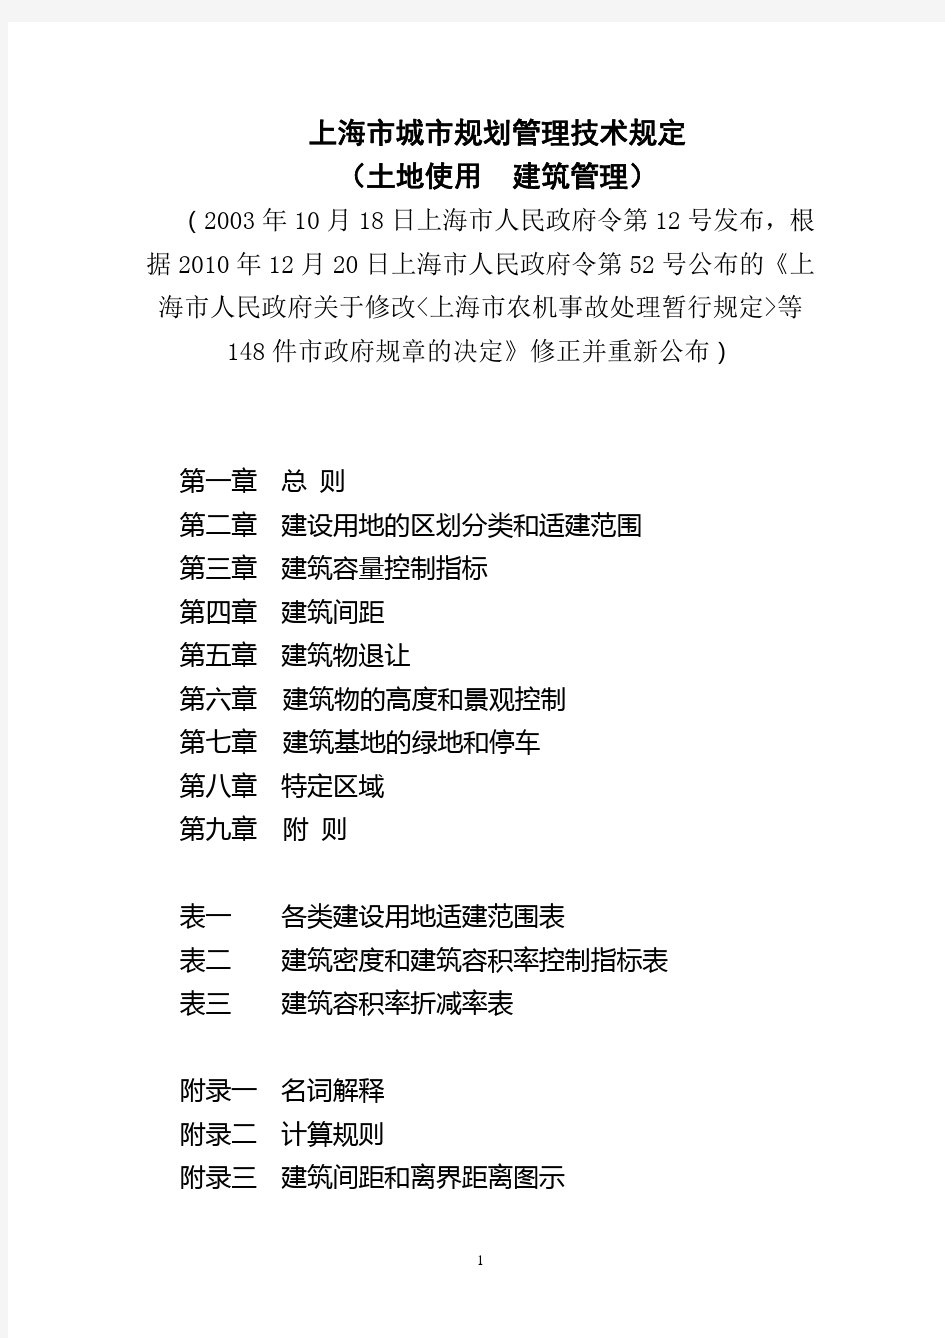 上海市城市规划管理技术规定-2011版